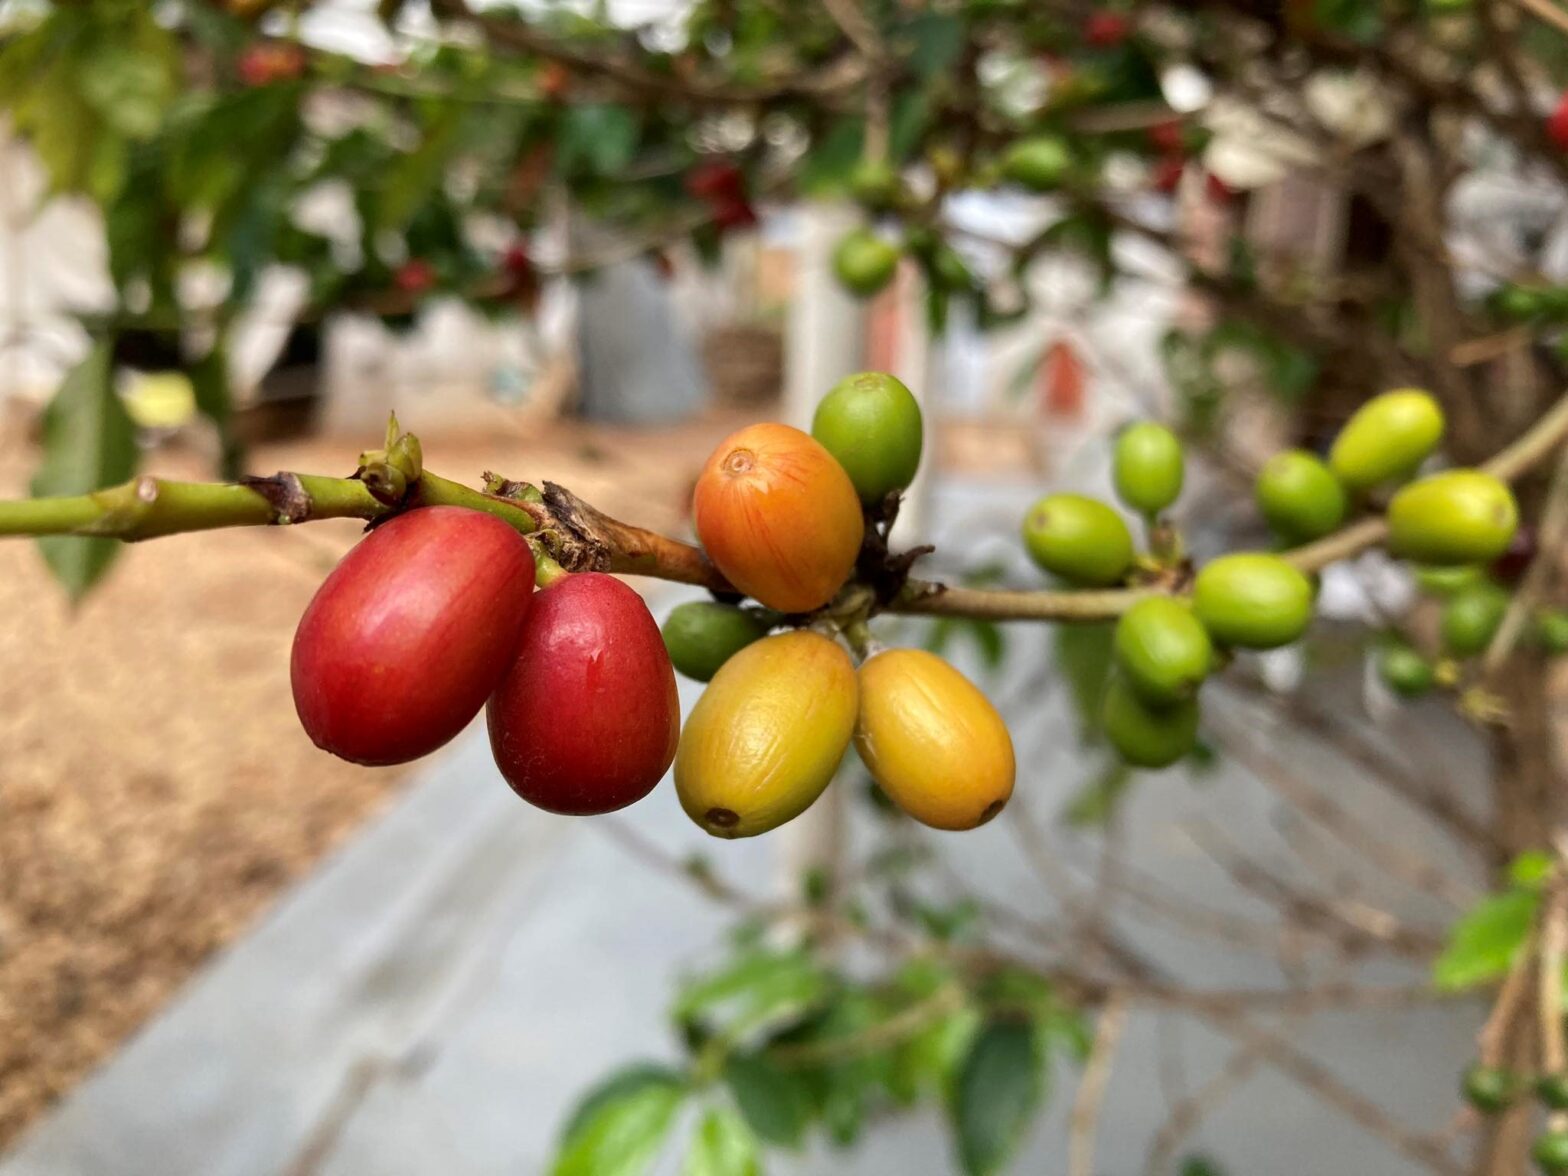 コーヒーを通して見えた、アフリカ・ルワンダ農村の暮らしと経済